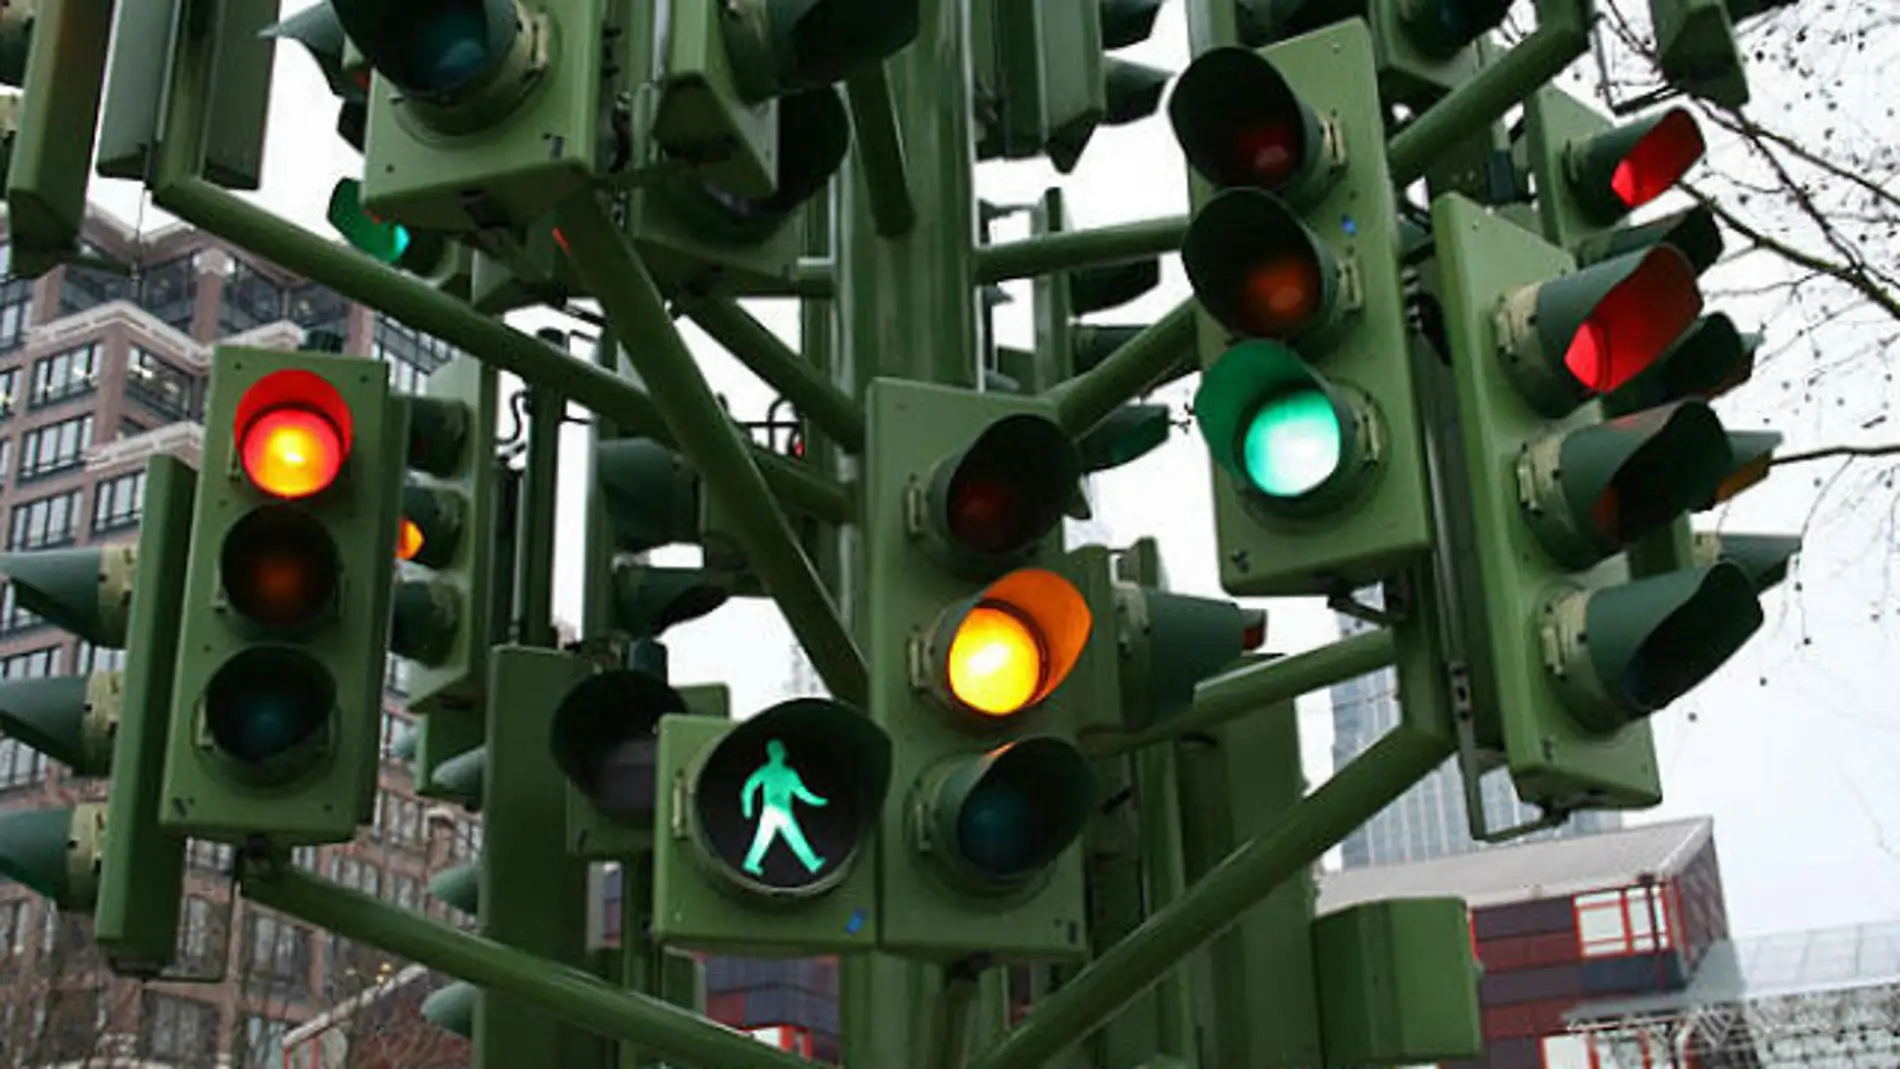 Historia del semáforo automático